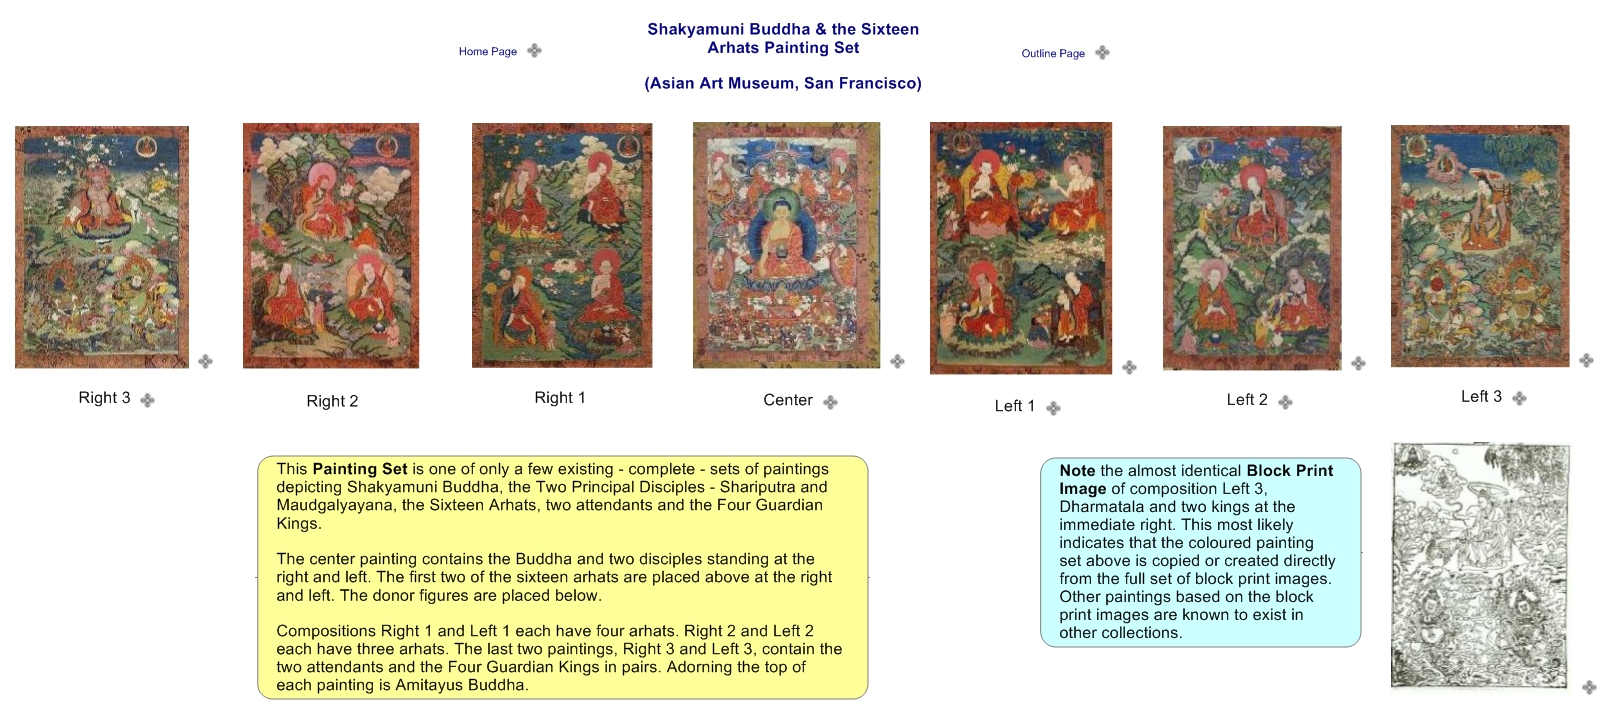 Shakyamuni Buddha & the Sixteen Arhats Painting Set (Asian Art Museum, San Francisco)